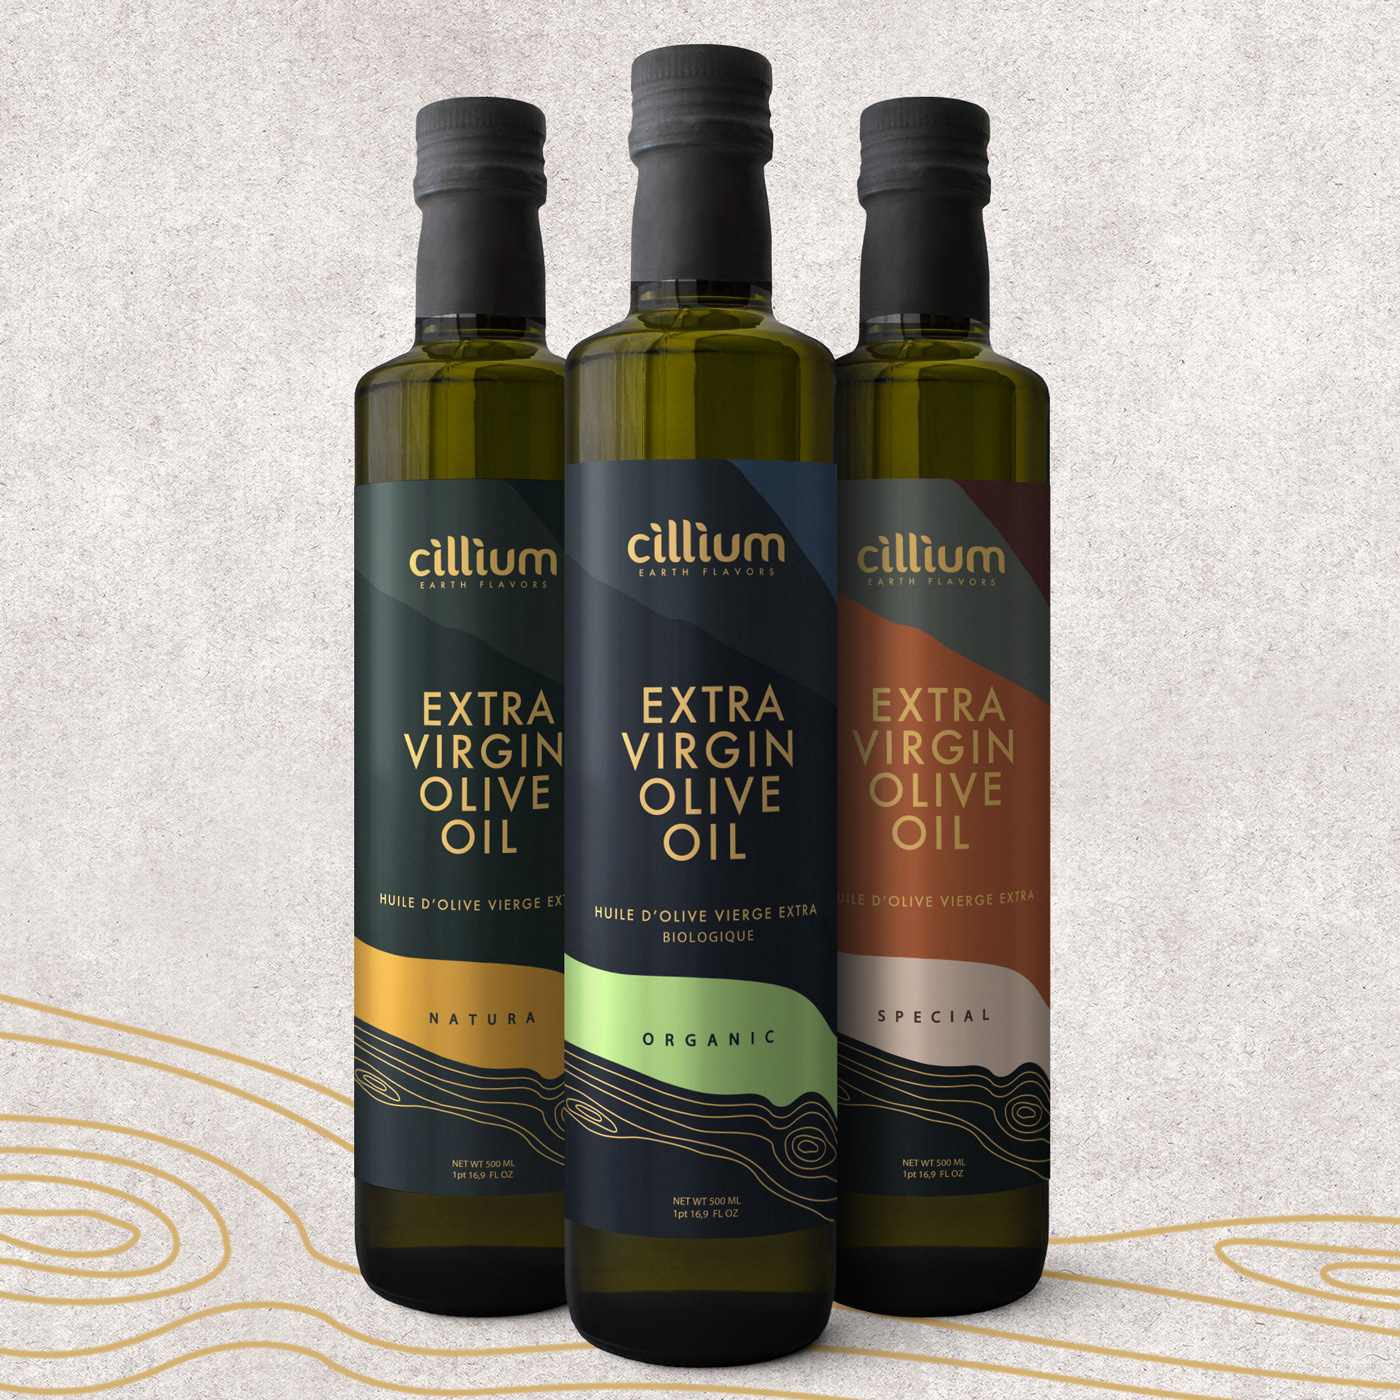 Cillium Olive Oil